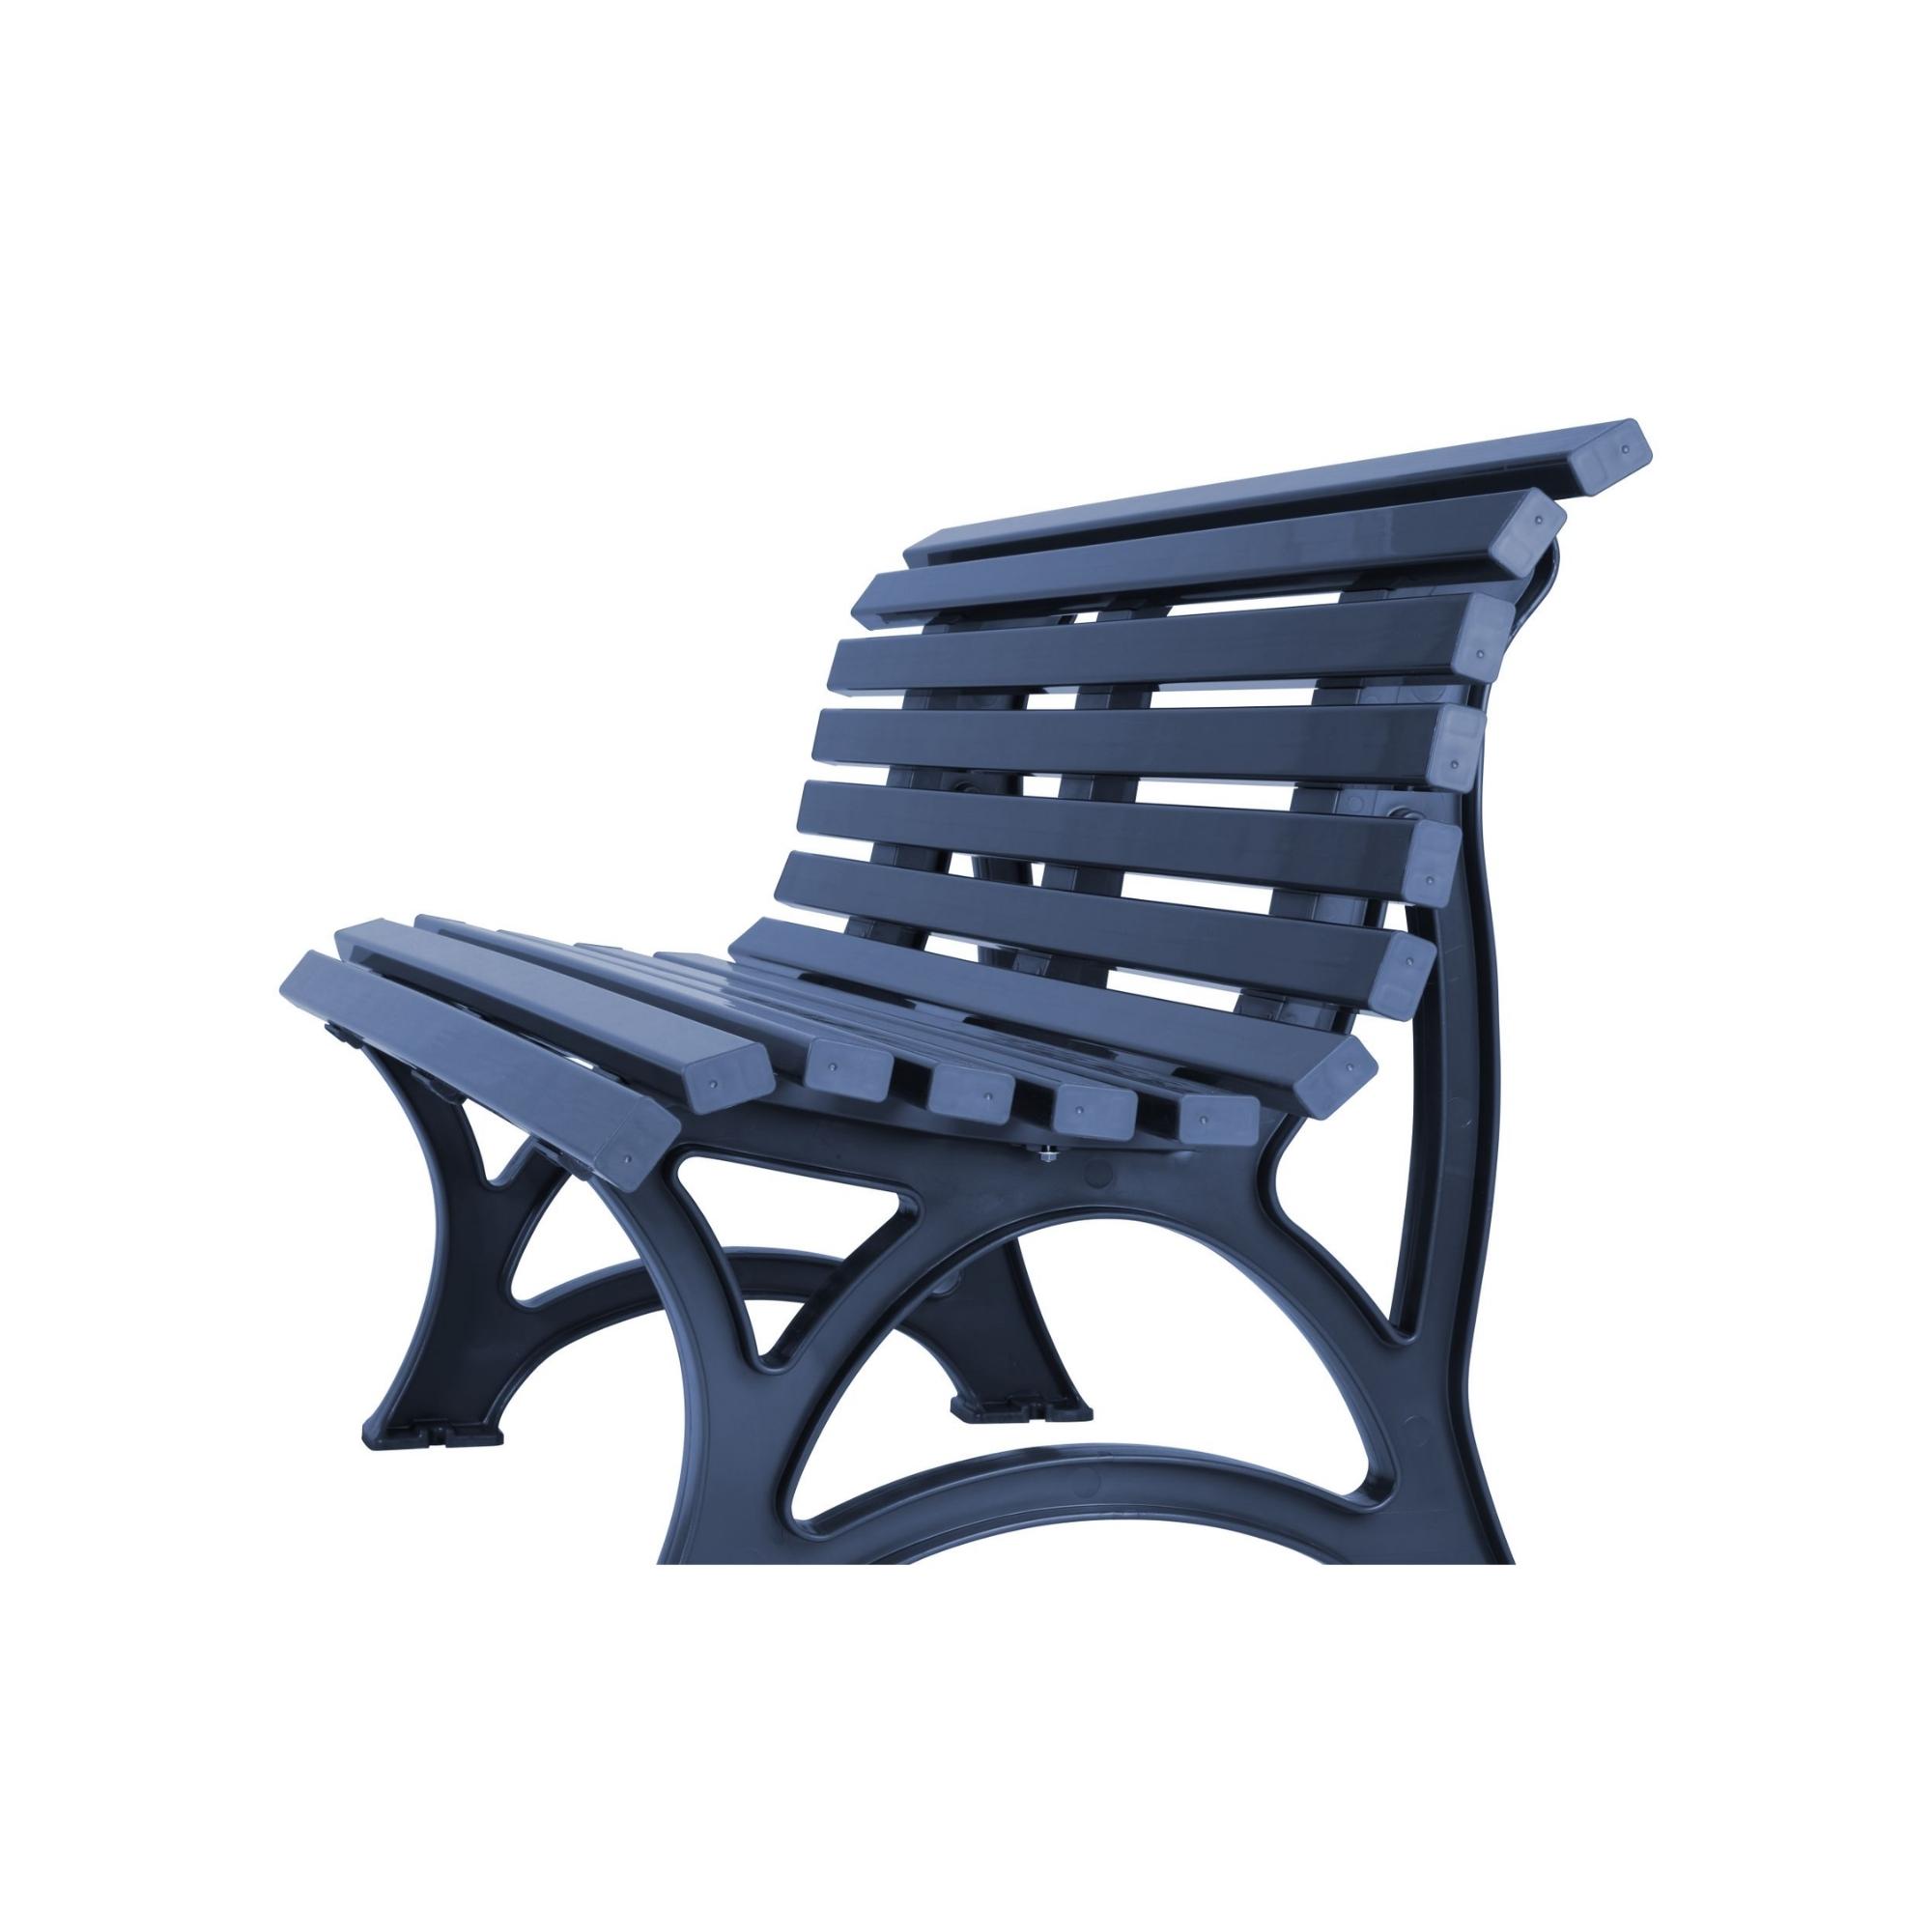 Gartenbank Jamaika | 3-Sitzer | Blau | HxBxT 80x150x64cm | Witterungs- & UV-beständiger Kunststoff | Parkbank Sitzbank Außenbereich Garten Balkon Terrasse